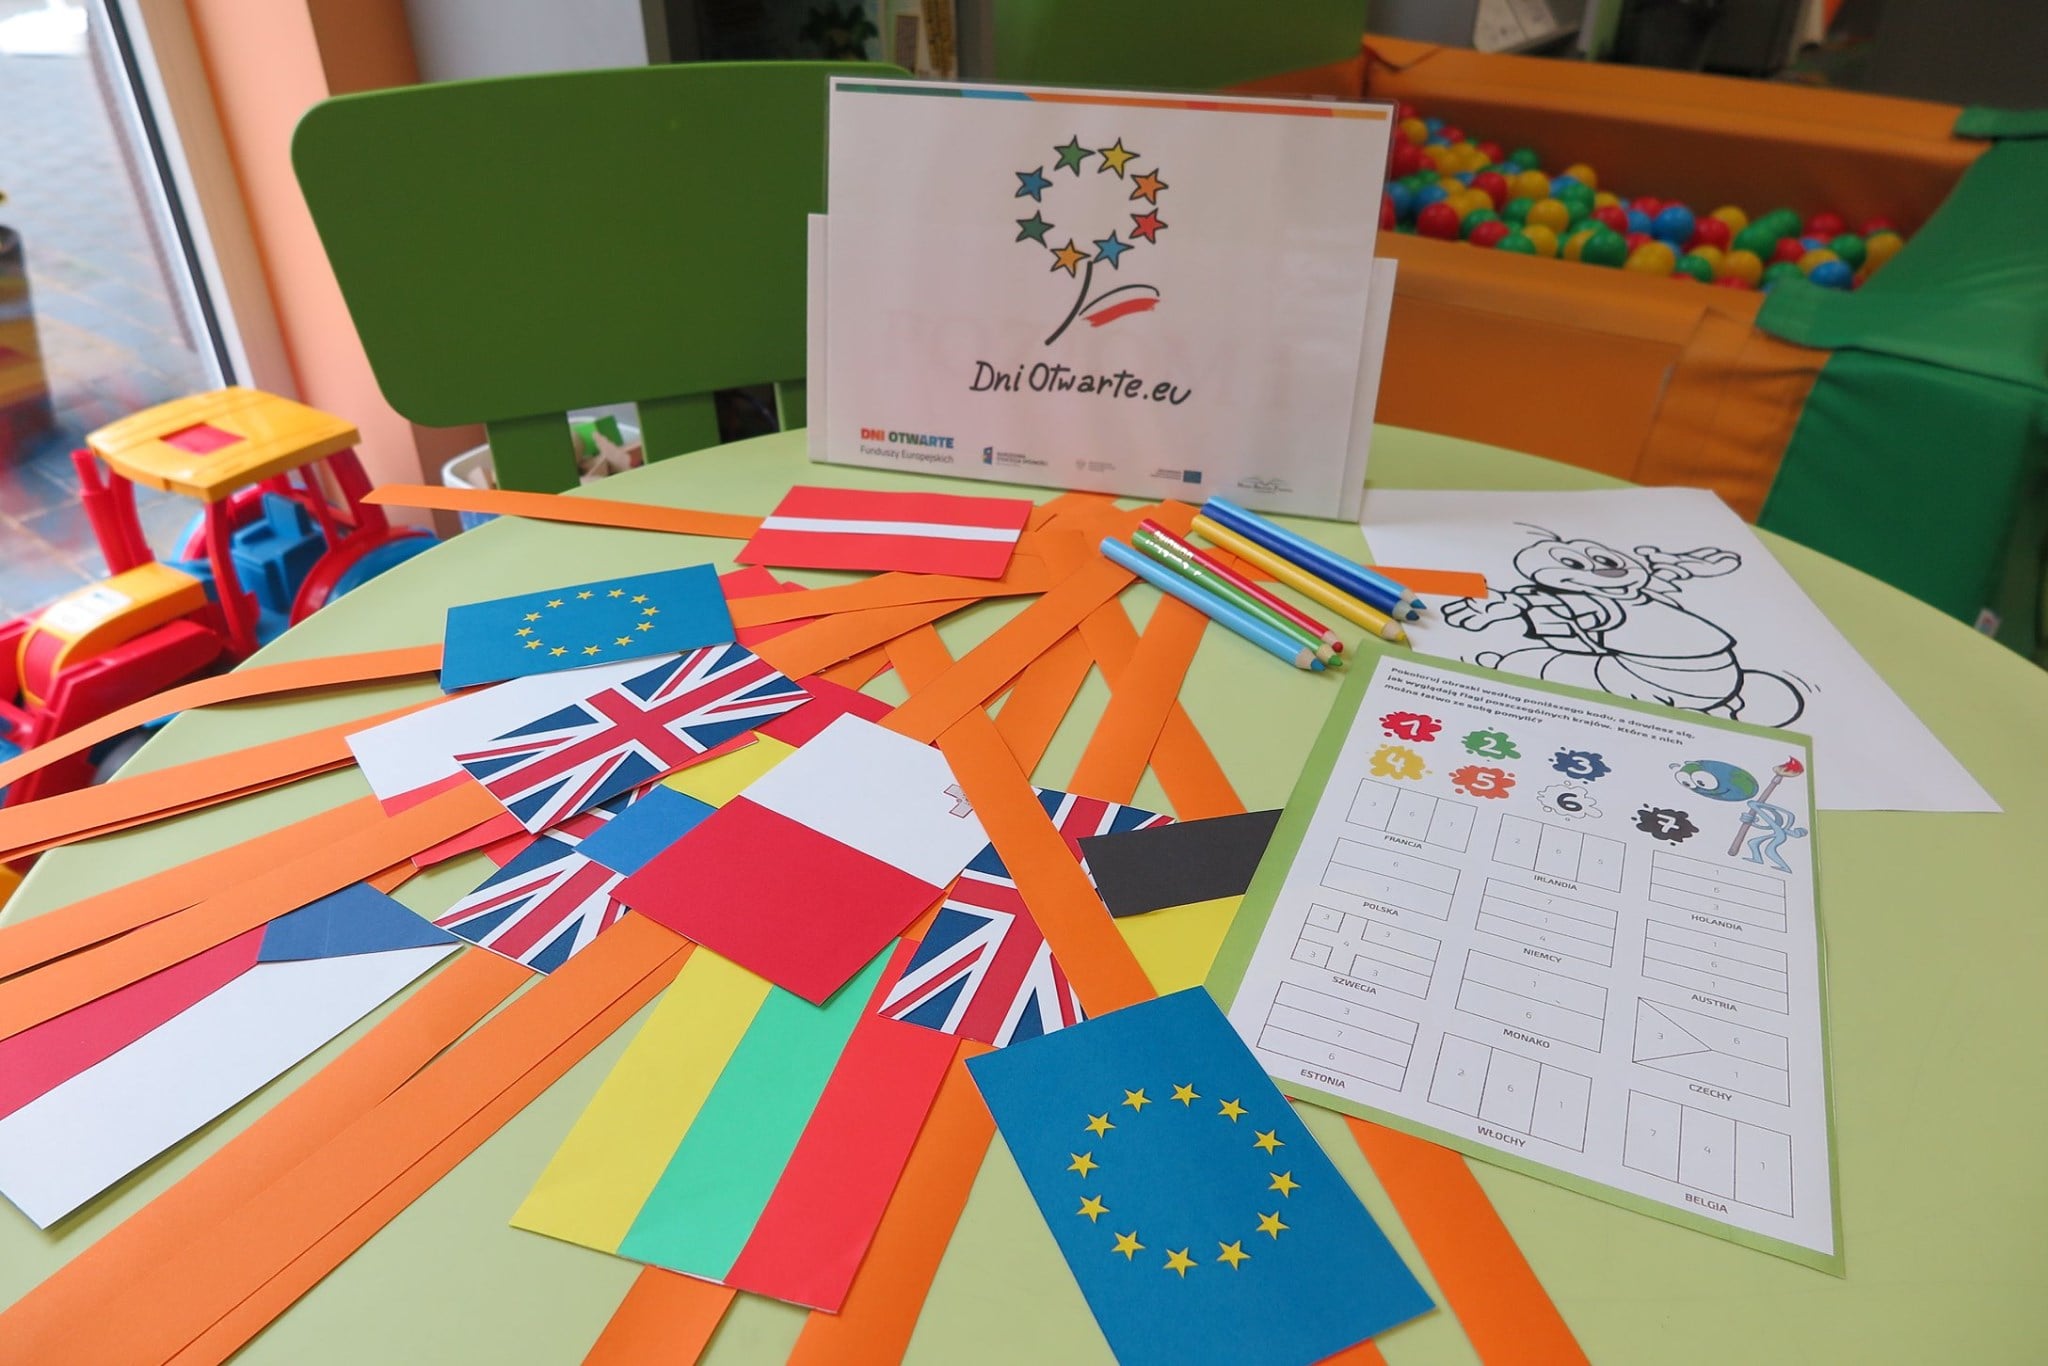 Na stoliku wycięte flagi krajów UE i inne elementy związane z UE.  